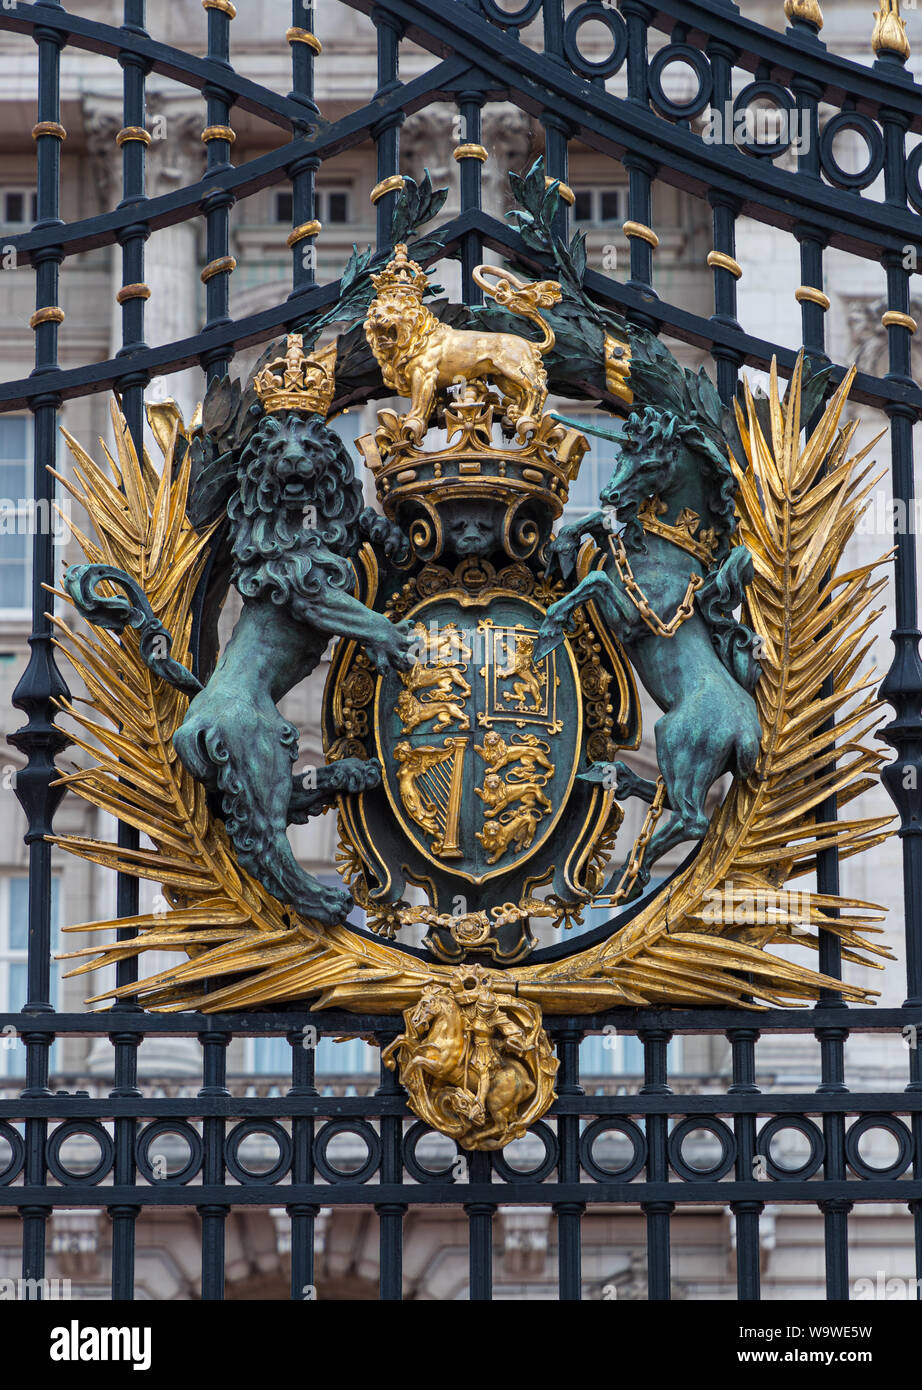 Royal crest on the gates of Buckingham Palace, London, England Stock Photo